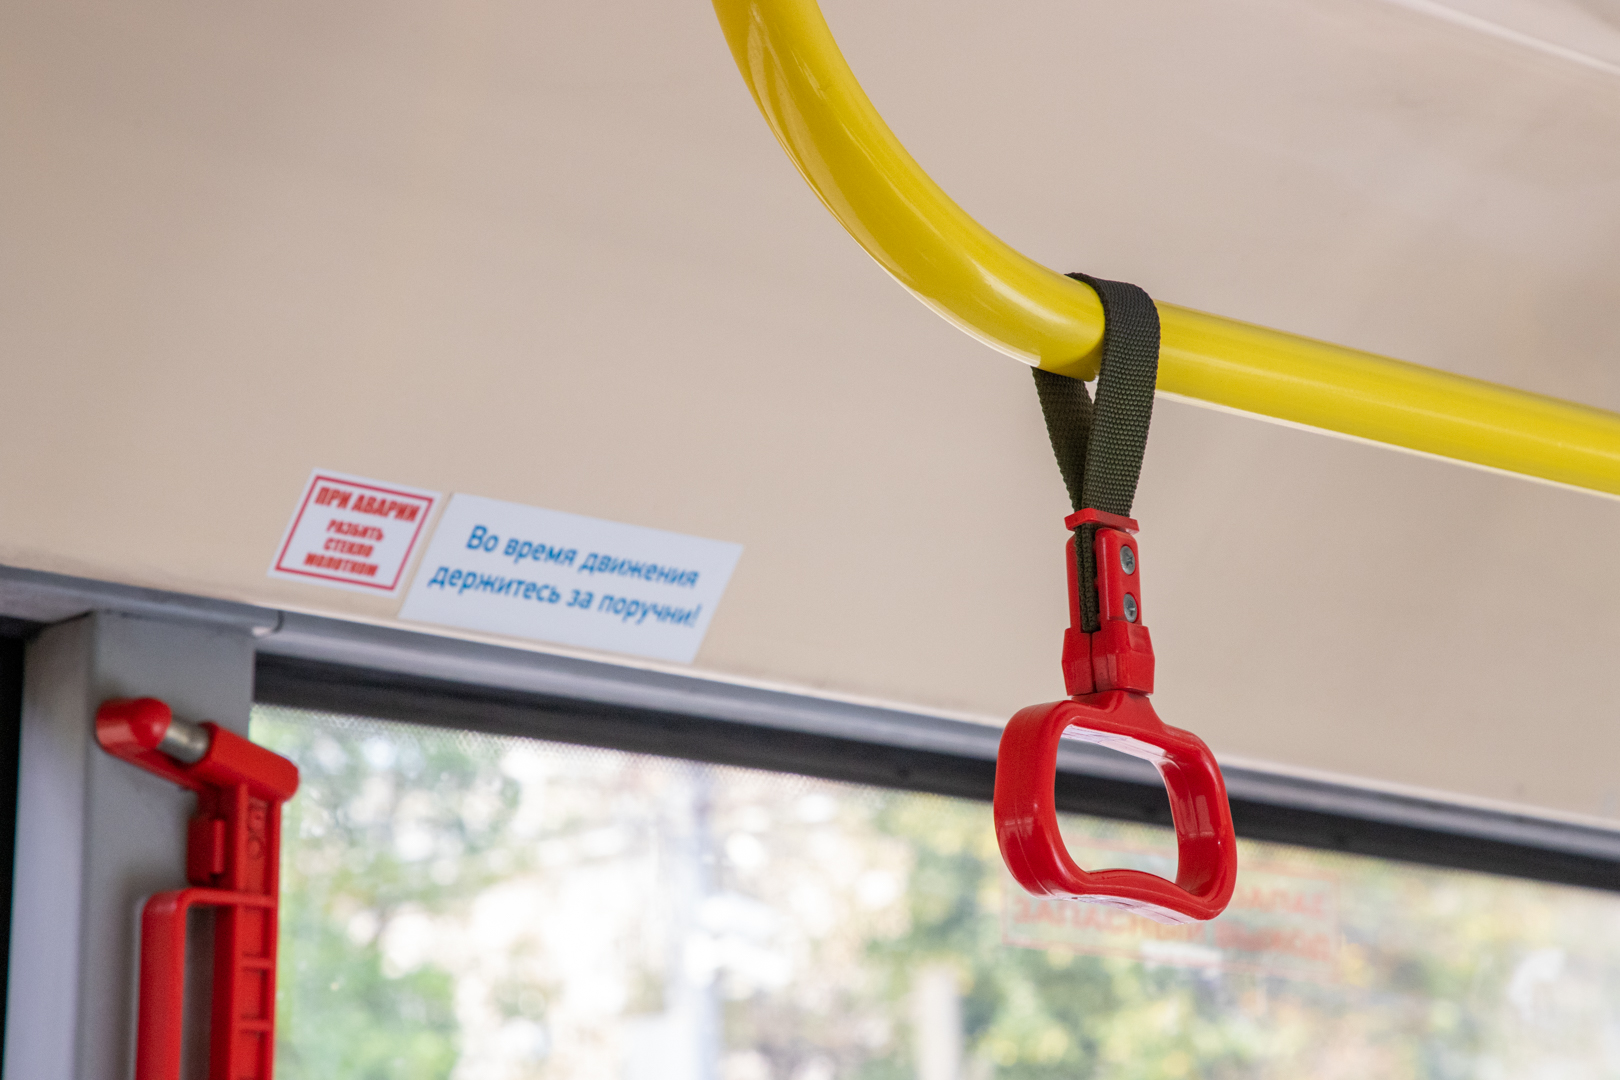 В Туле образовалась задержка движения автобуса №28 из-за падения пассажирки в салоне